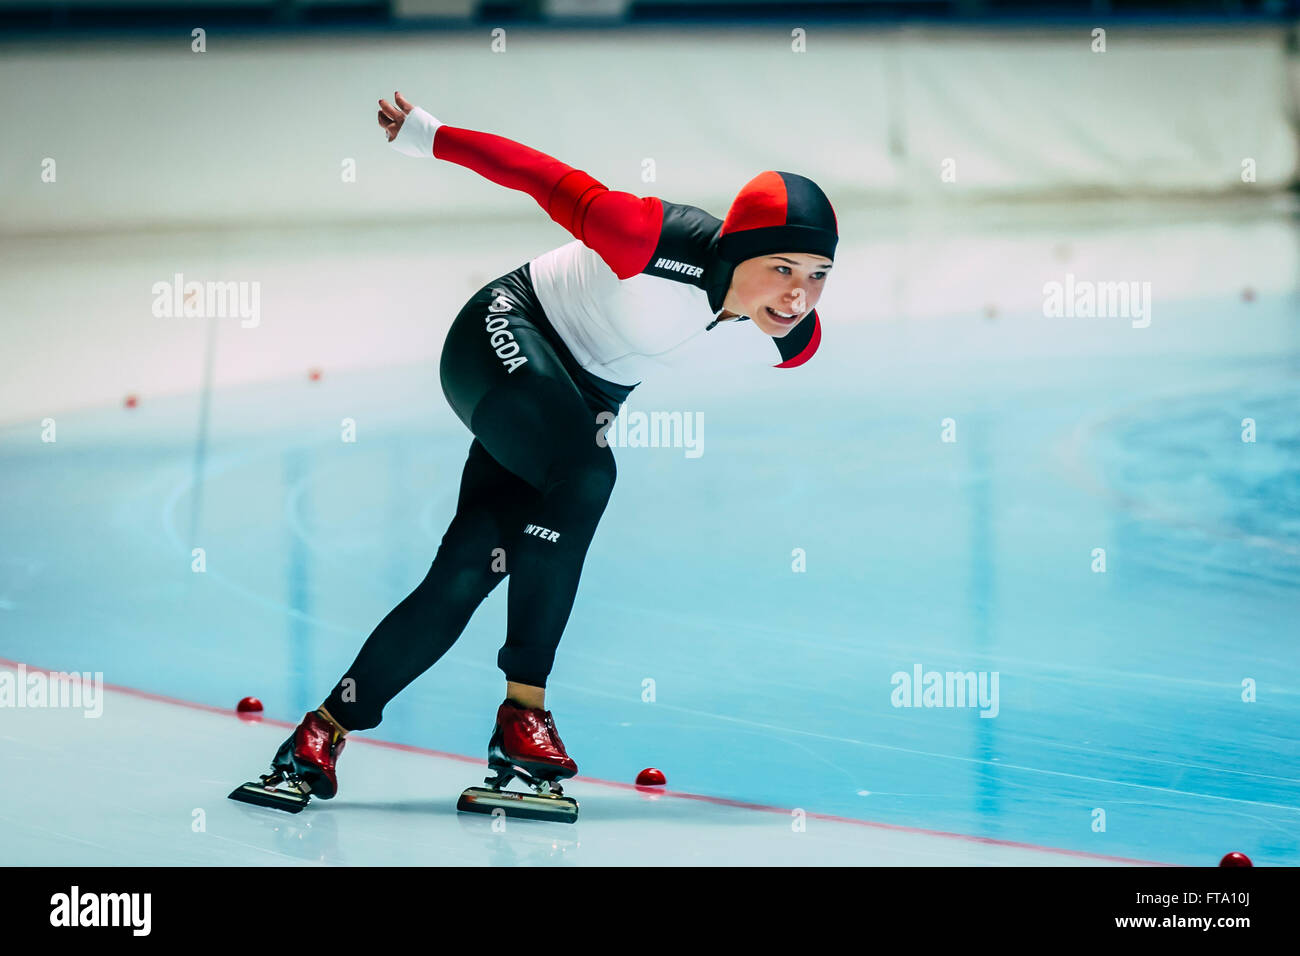 Chelyabinsk, Rusia - Octubre 15, 2015: el joven patinadores de velocidad en una pista de atletismo patinaje durante la taza de Rusia Foto de stock